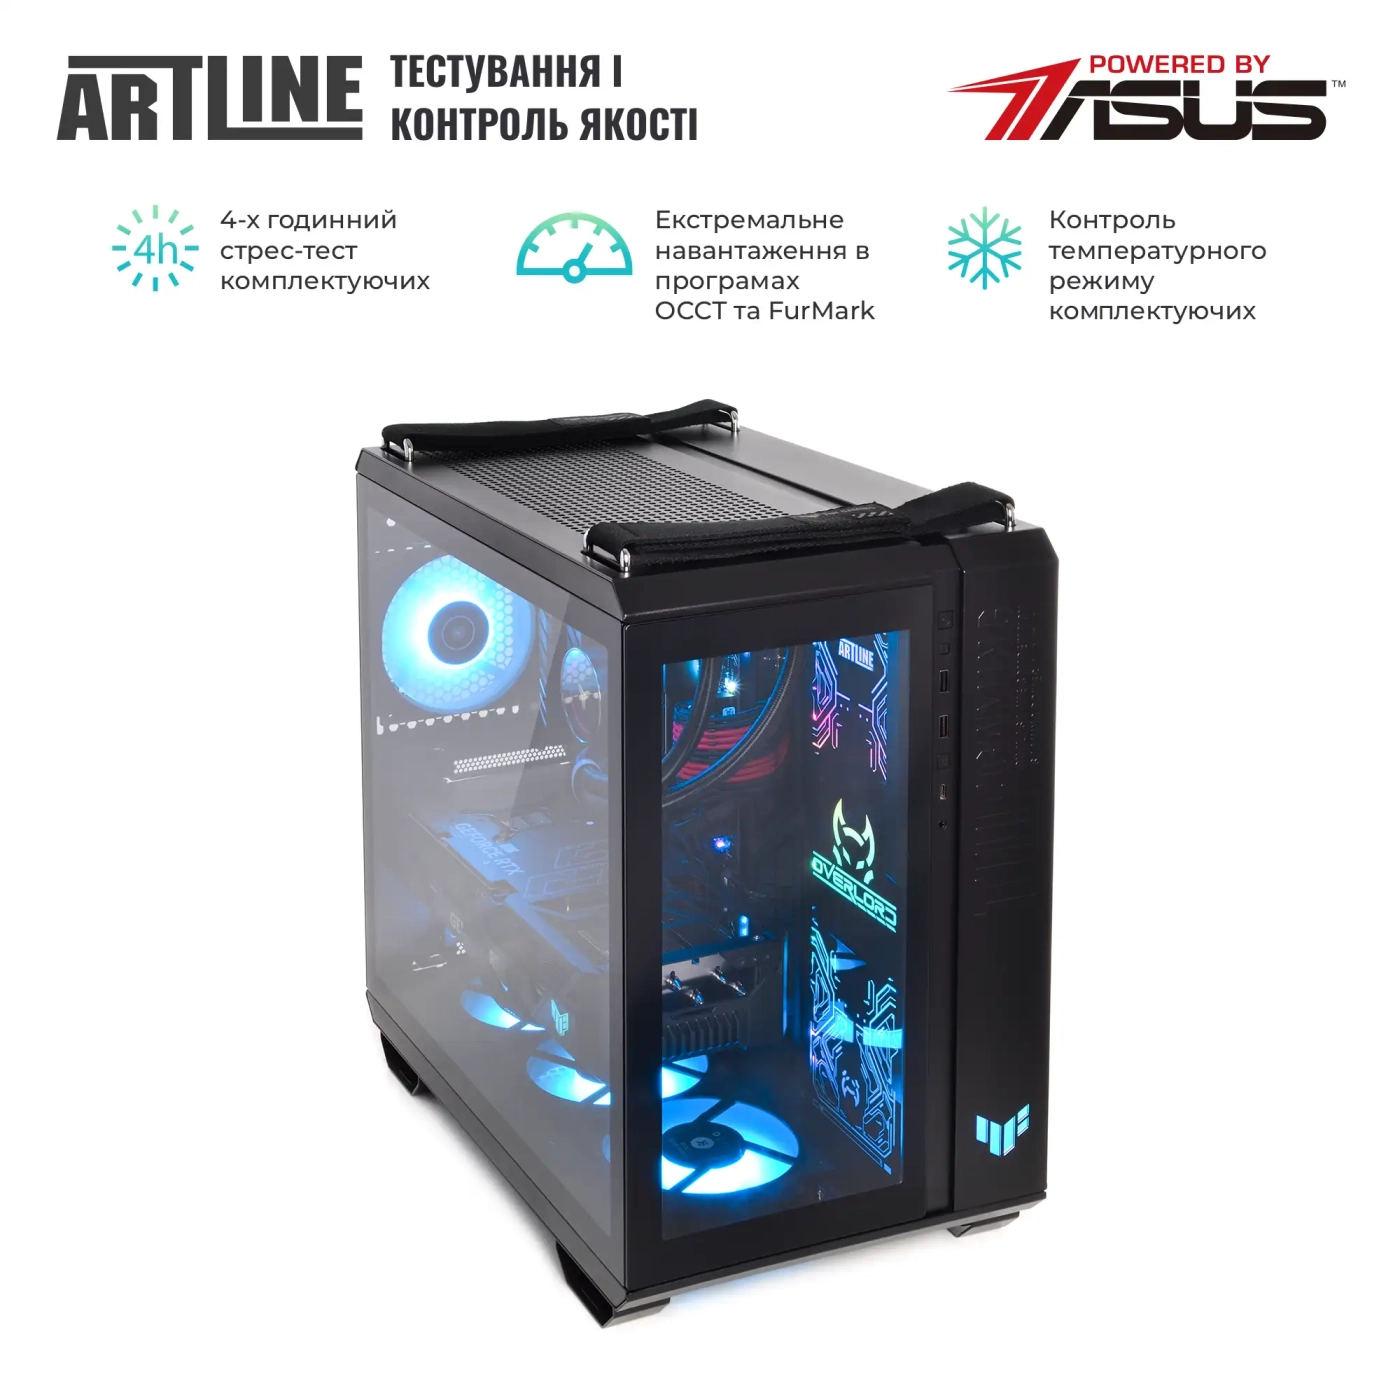 Купить Компьютер ARTLINE Gaming GT502 (GT502v49) - фото 9